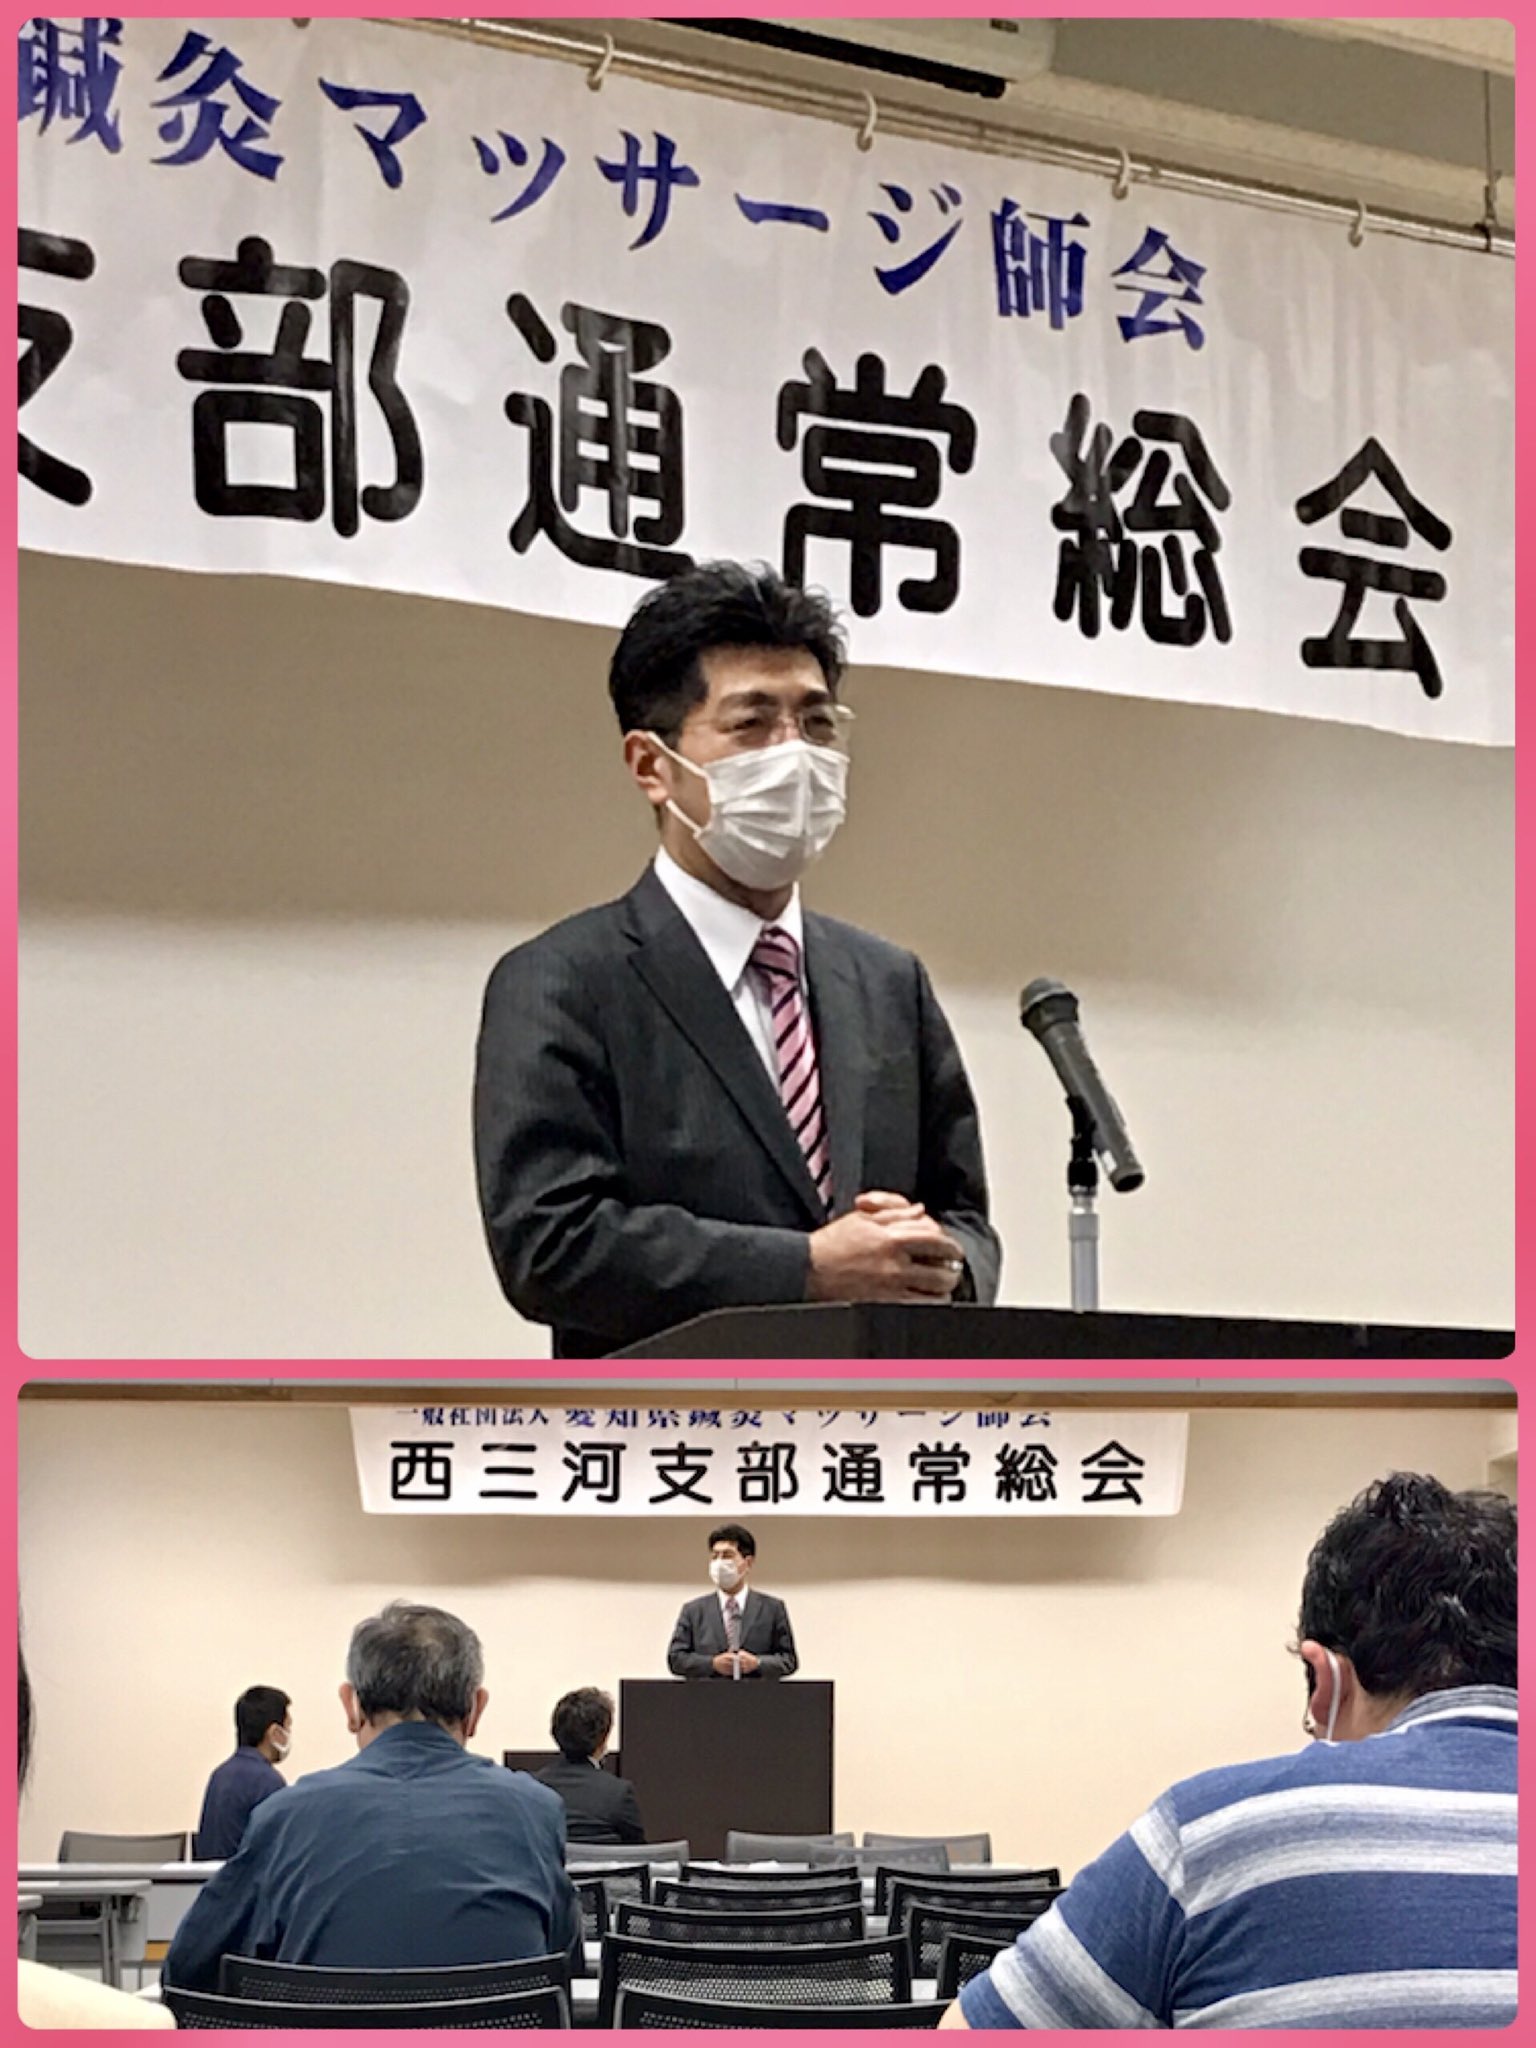 愛知県鍼灸マッサージ師会の西三河支部通常総会でご挨拶